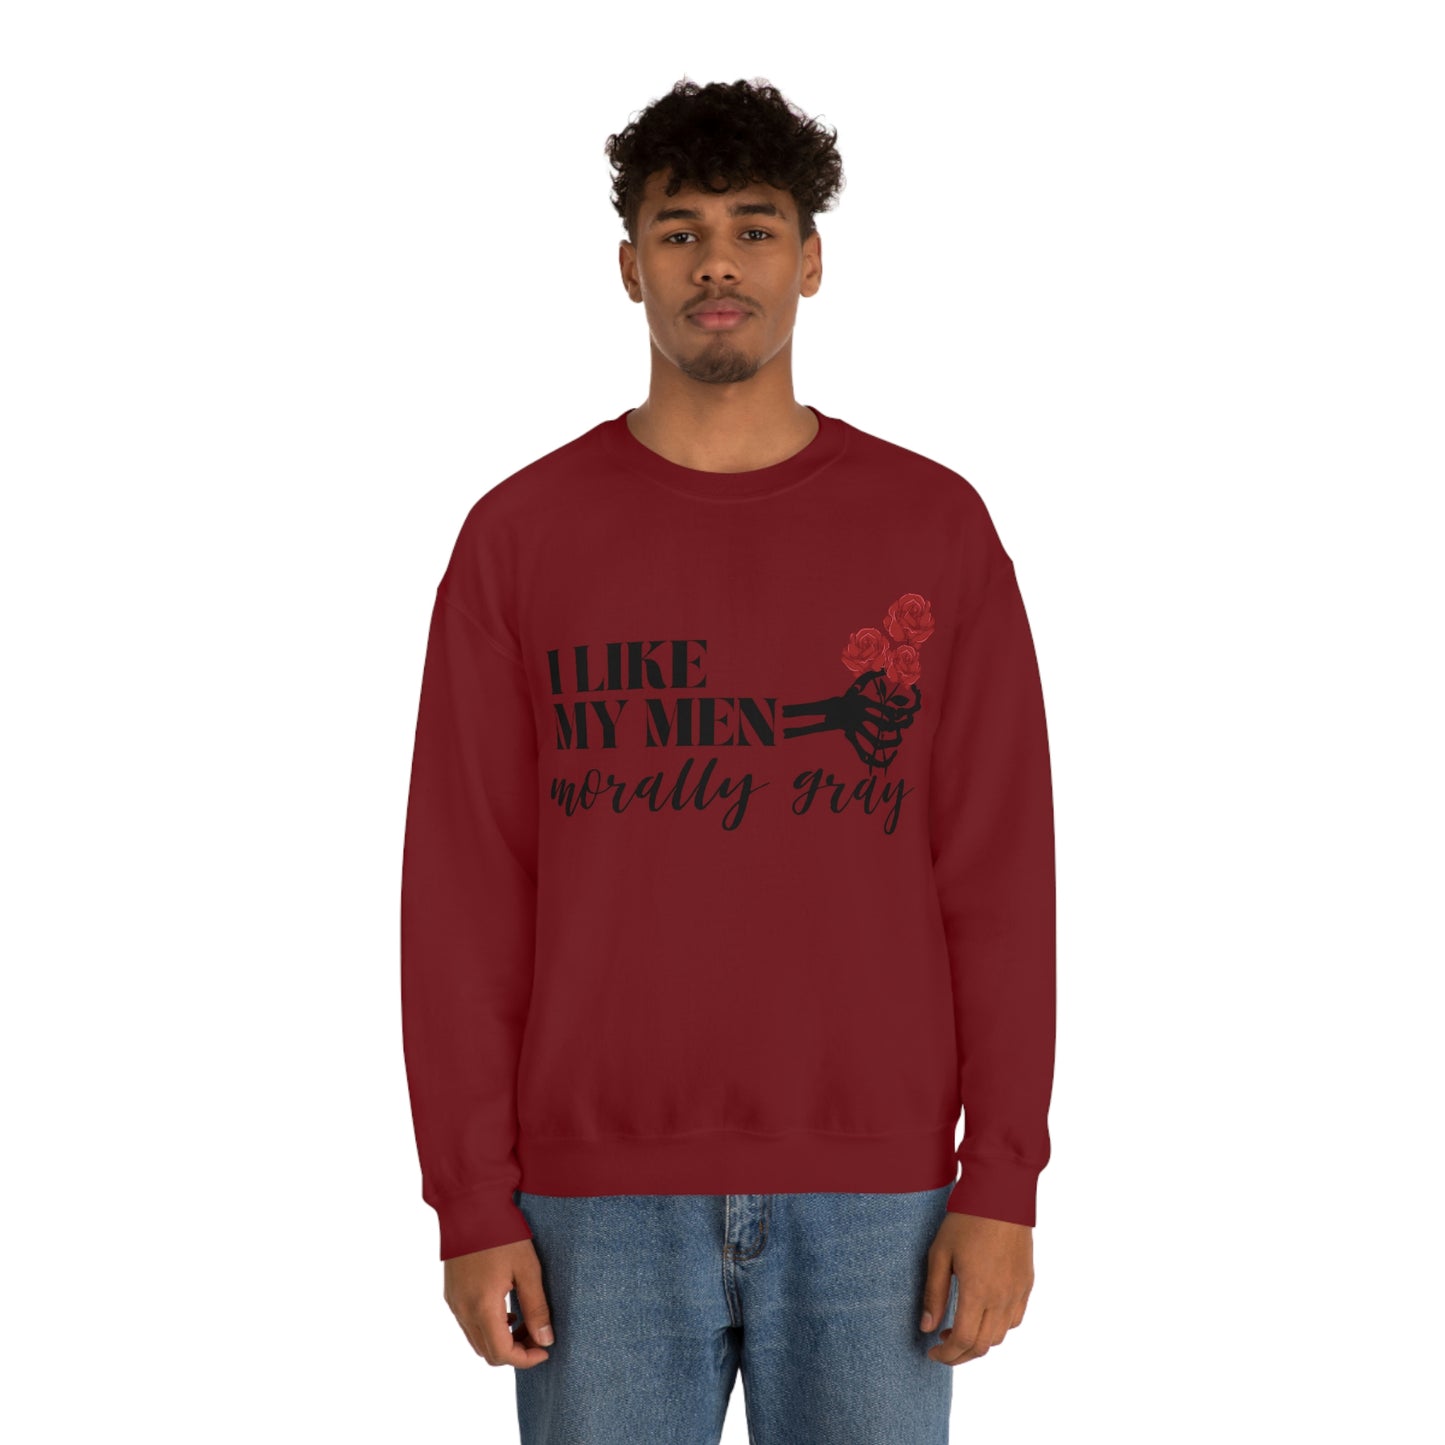 Morally Grey Crewneck Sweatshirt